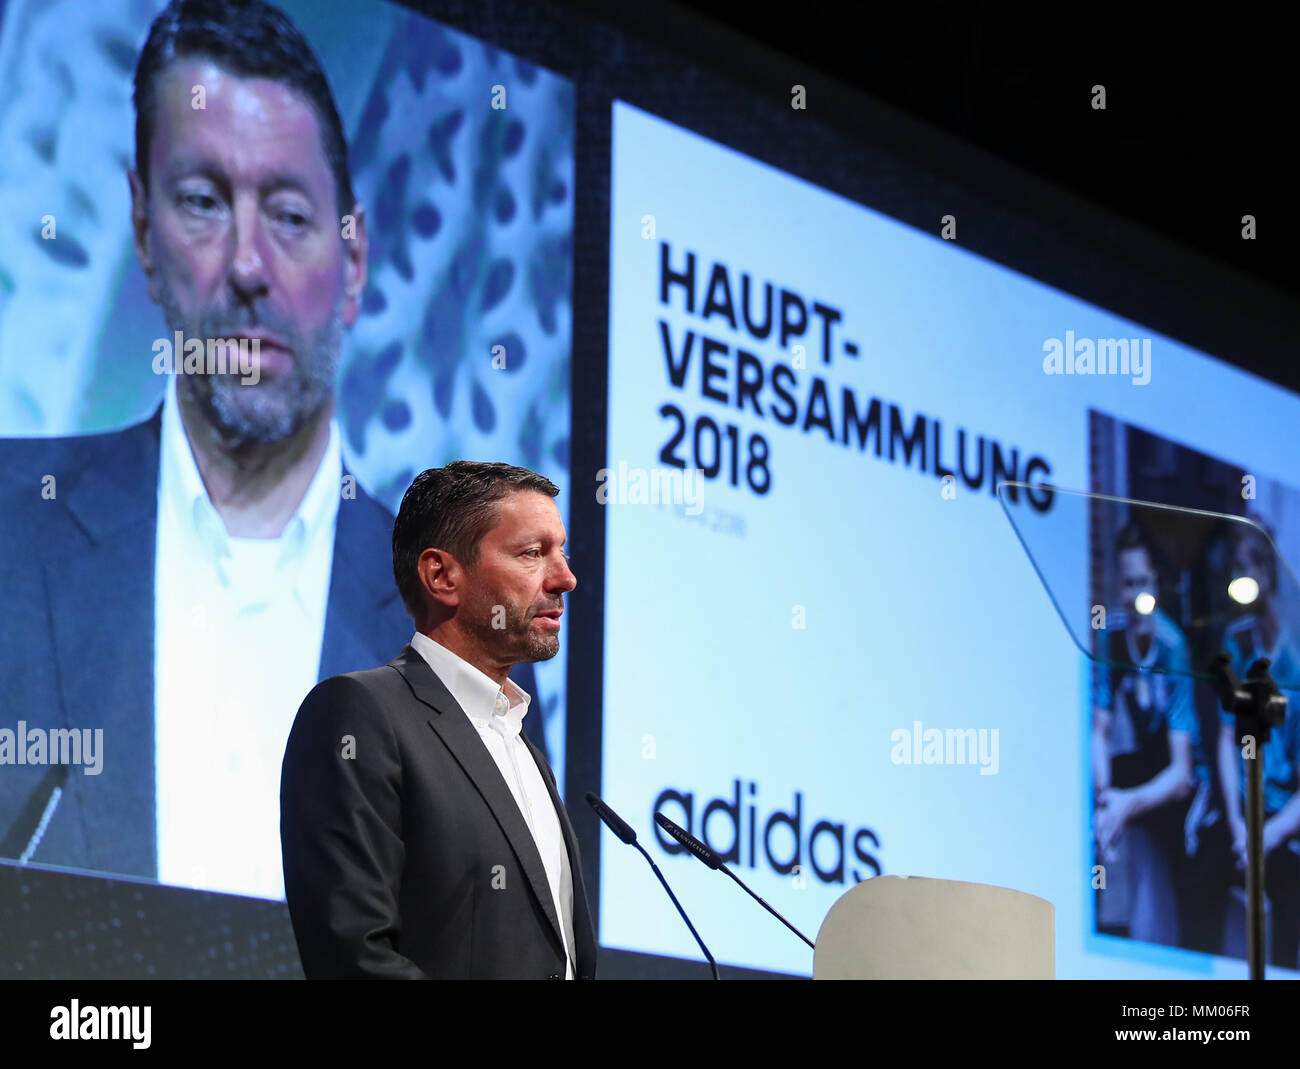 09 Mai 2018, Deutschland, Fürth: CEO der Sportartikelhersteller Adidas AG,  Kasper Rorsted, während der Hauptversammlung des Unternehmens. Foto: Daniel  Karmann/dpa Stockfotografie - Alamy